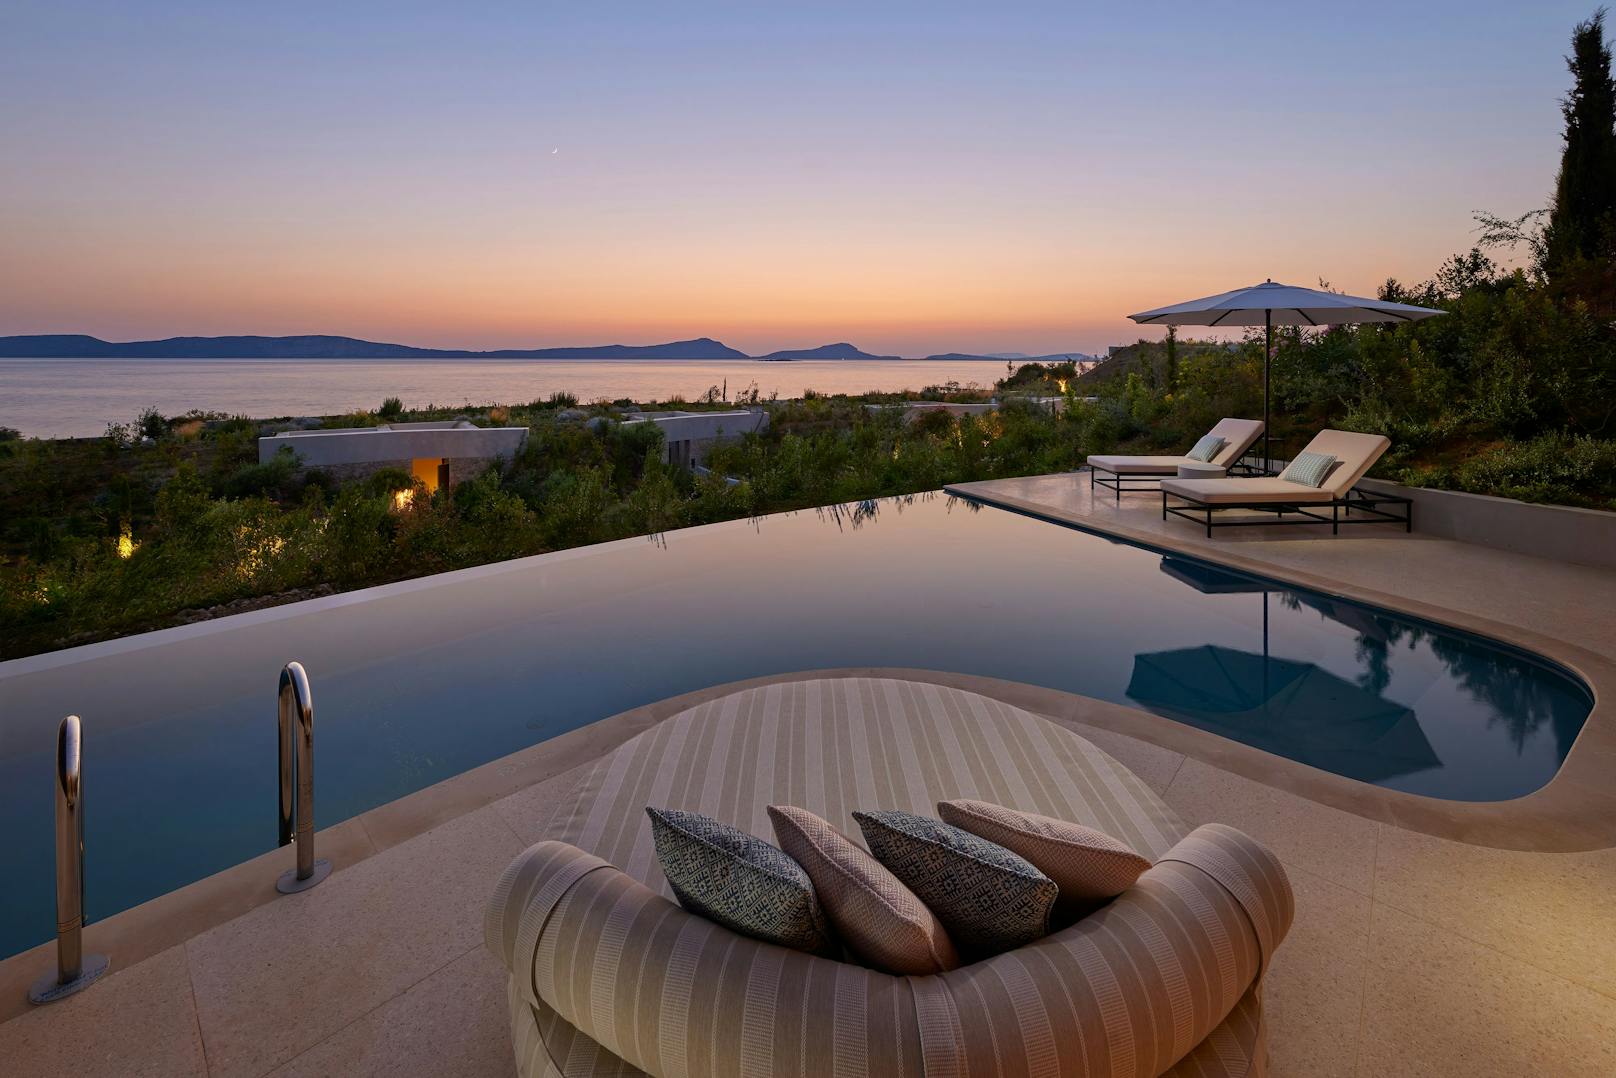 Mandarin Oriental, Costa Navarino ist ein Resort, das seinen Gästen den ultimativen Luxus bietet - und atemberaubende Sonnenuntergänge. Mit 99 Villen und Suiten ist das Hotel eine Luxusklasse für sich.